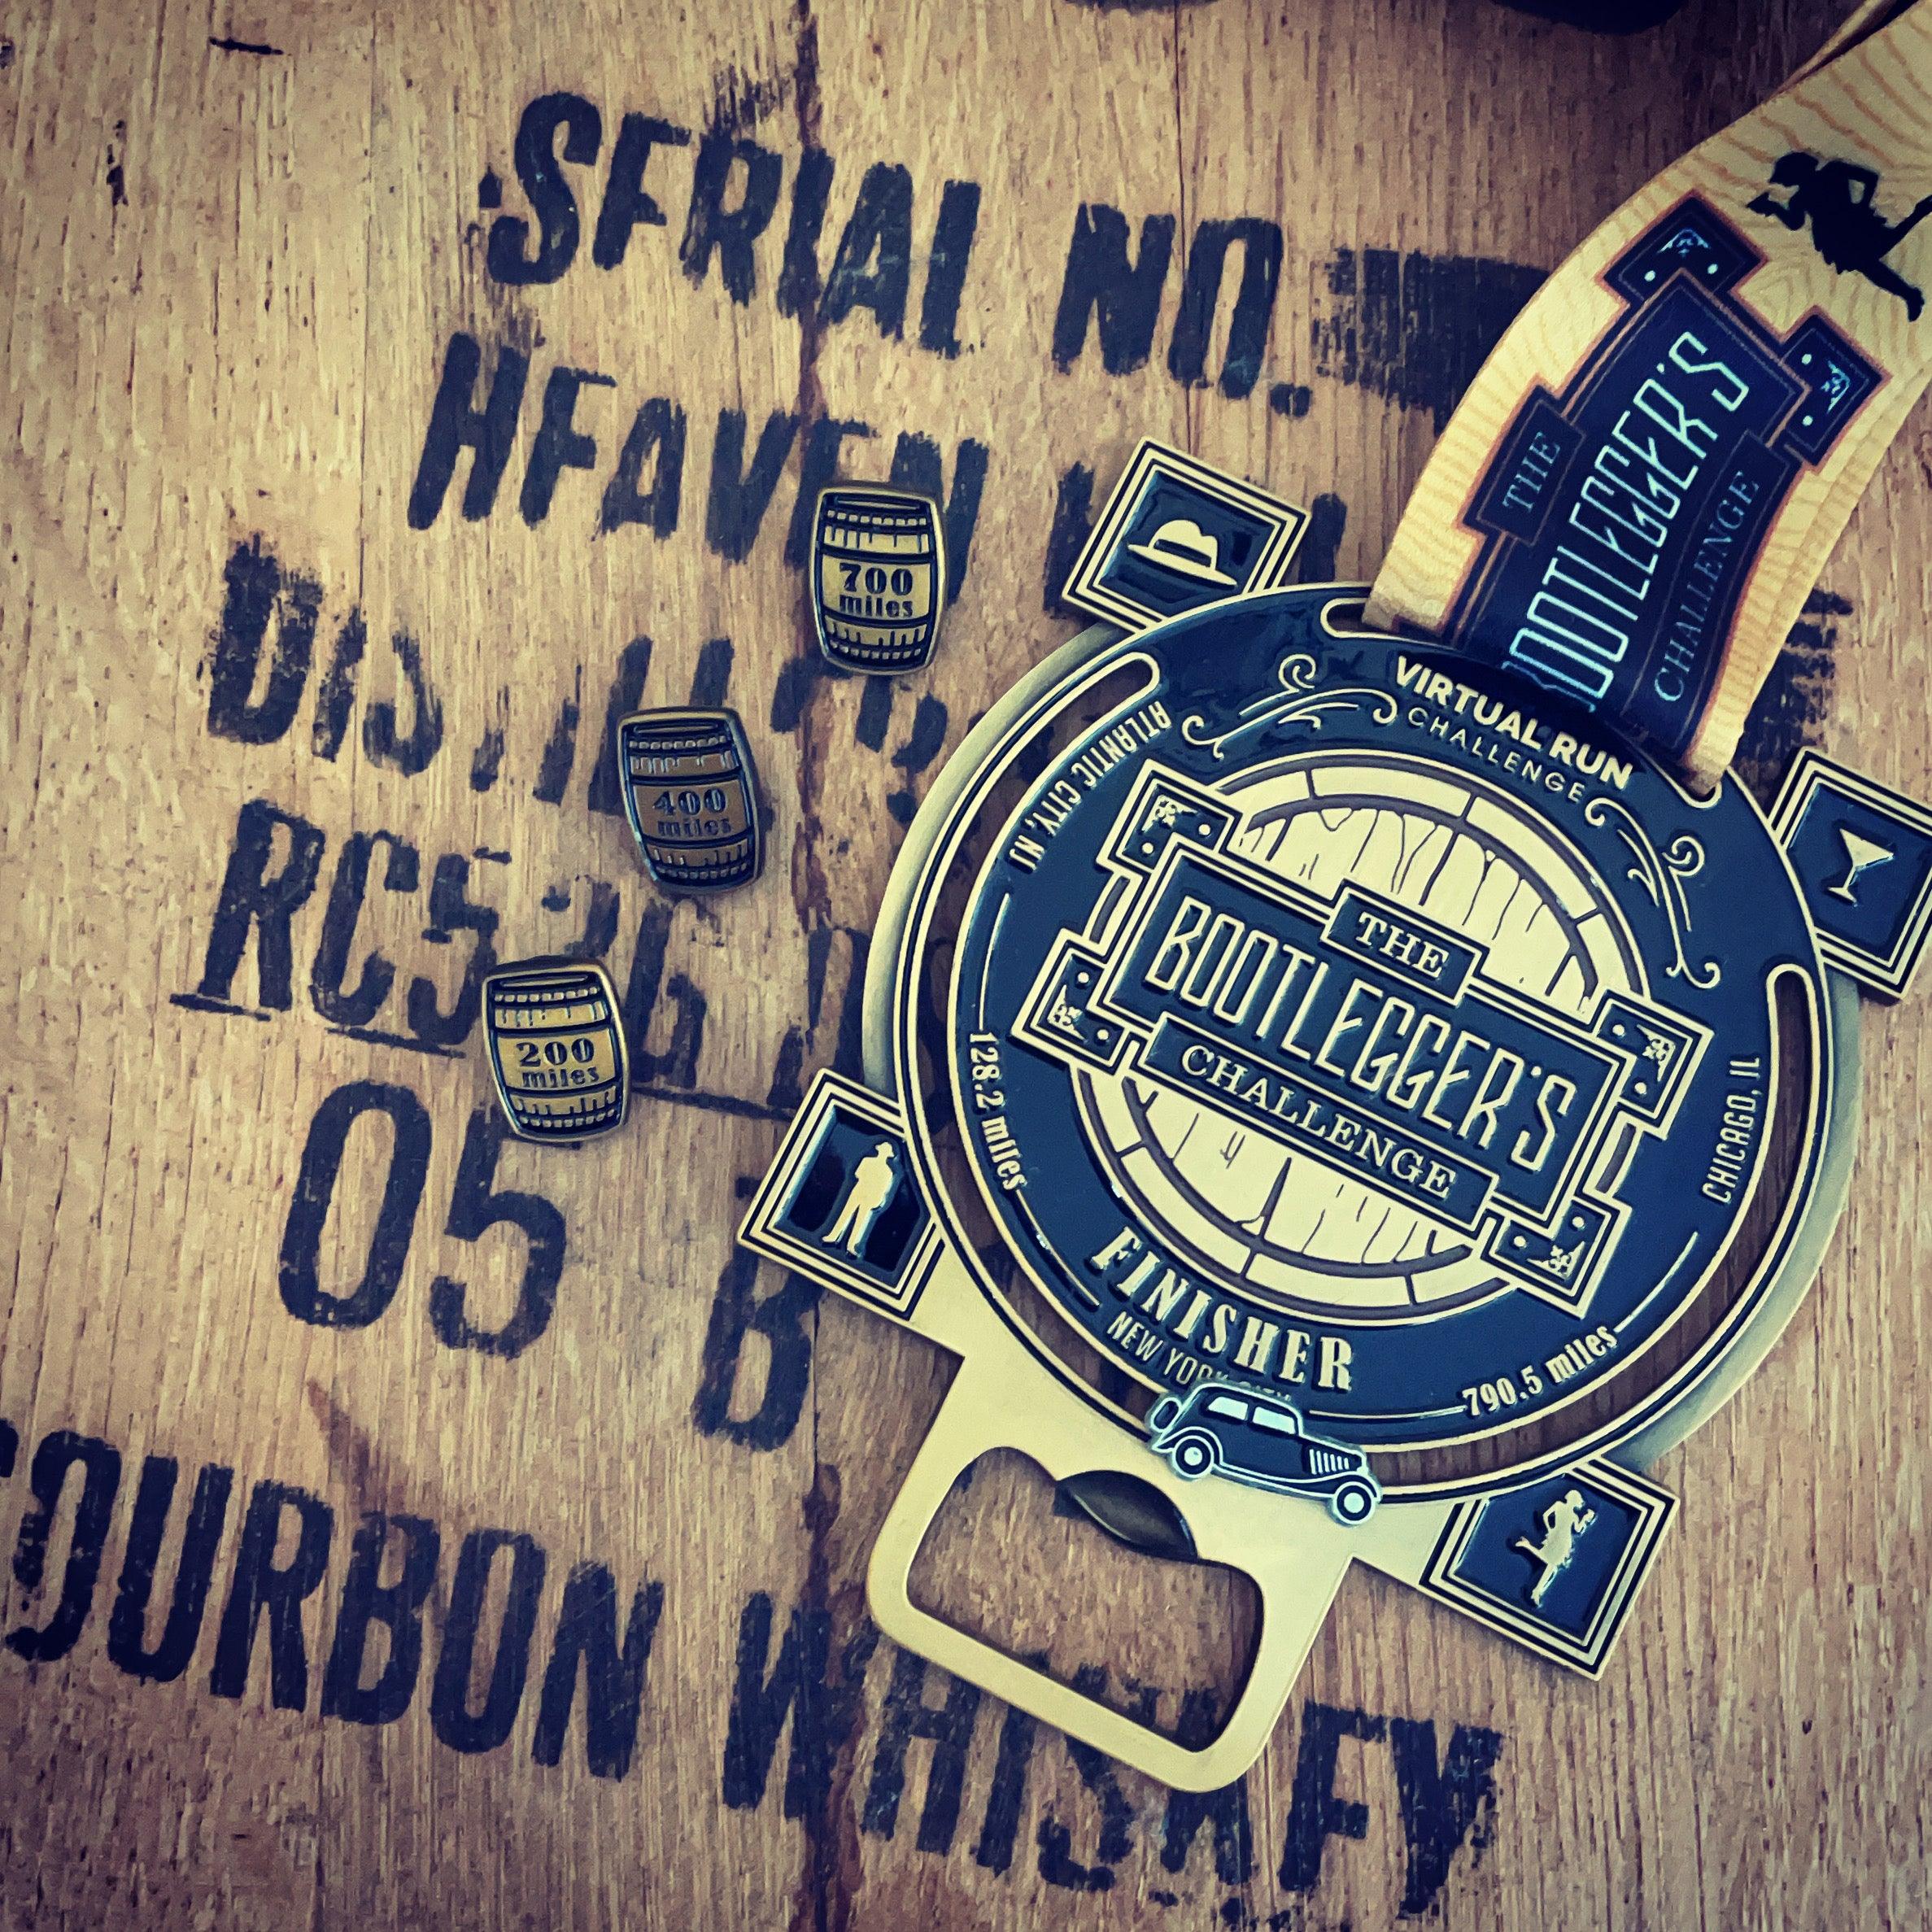 Bootlegger's Virtual Challenge 920 Mile Bourbon Barrel Themed Finisher Medal